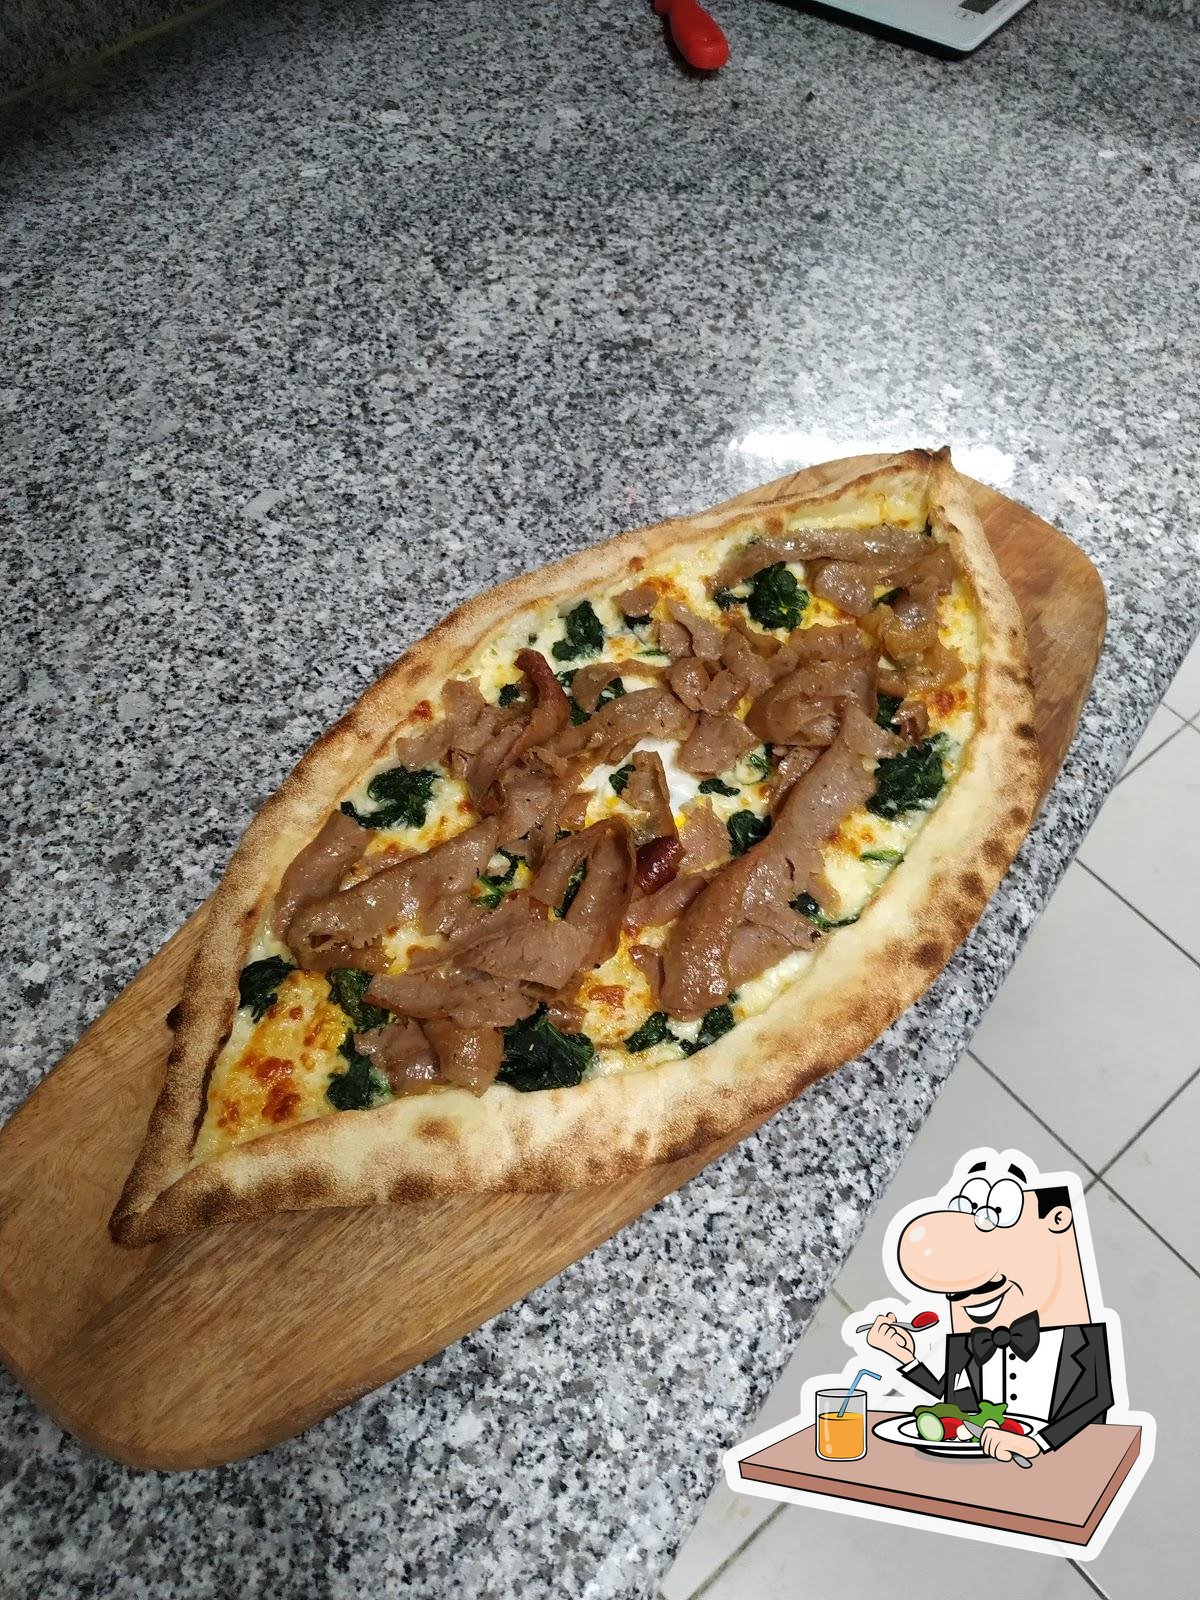 Pizzeria Donatello